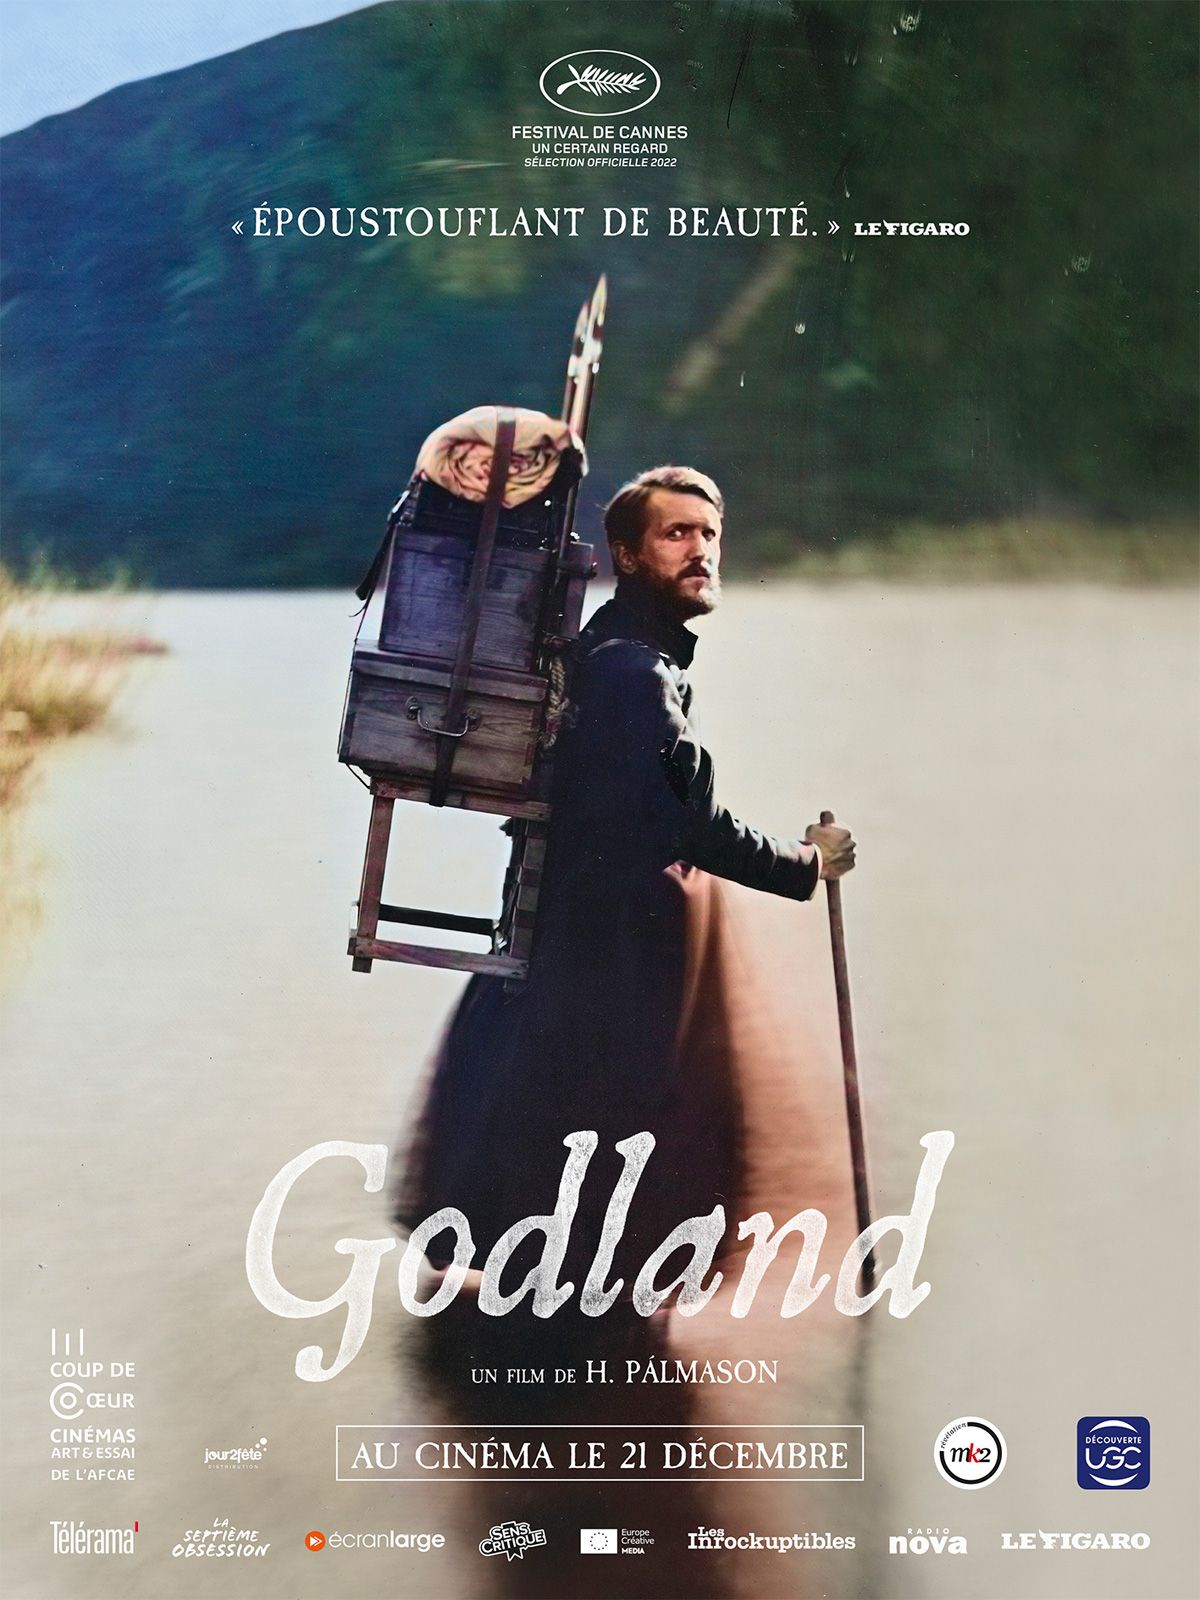 « Godland » de Hlynur Palmason